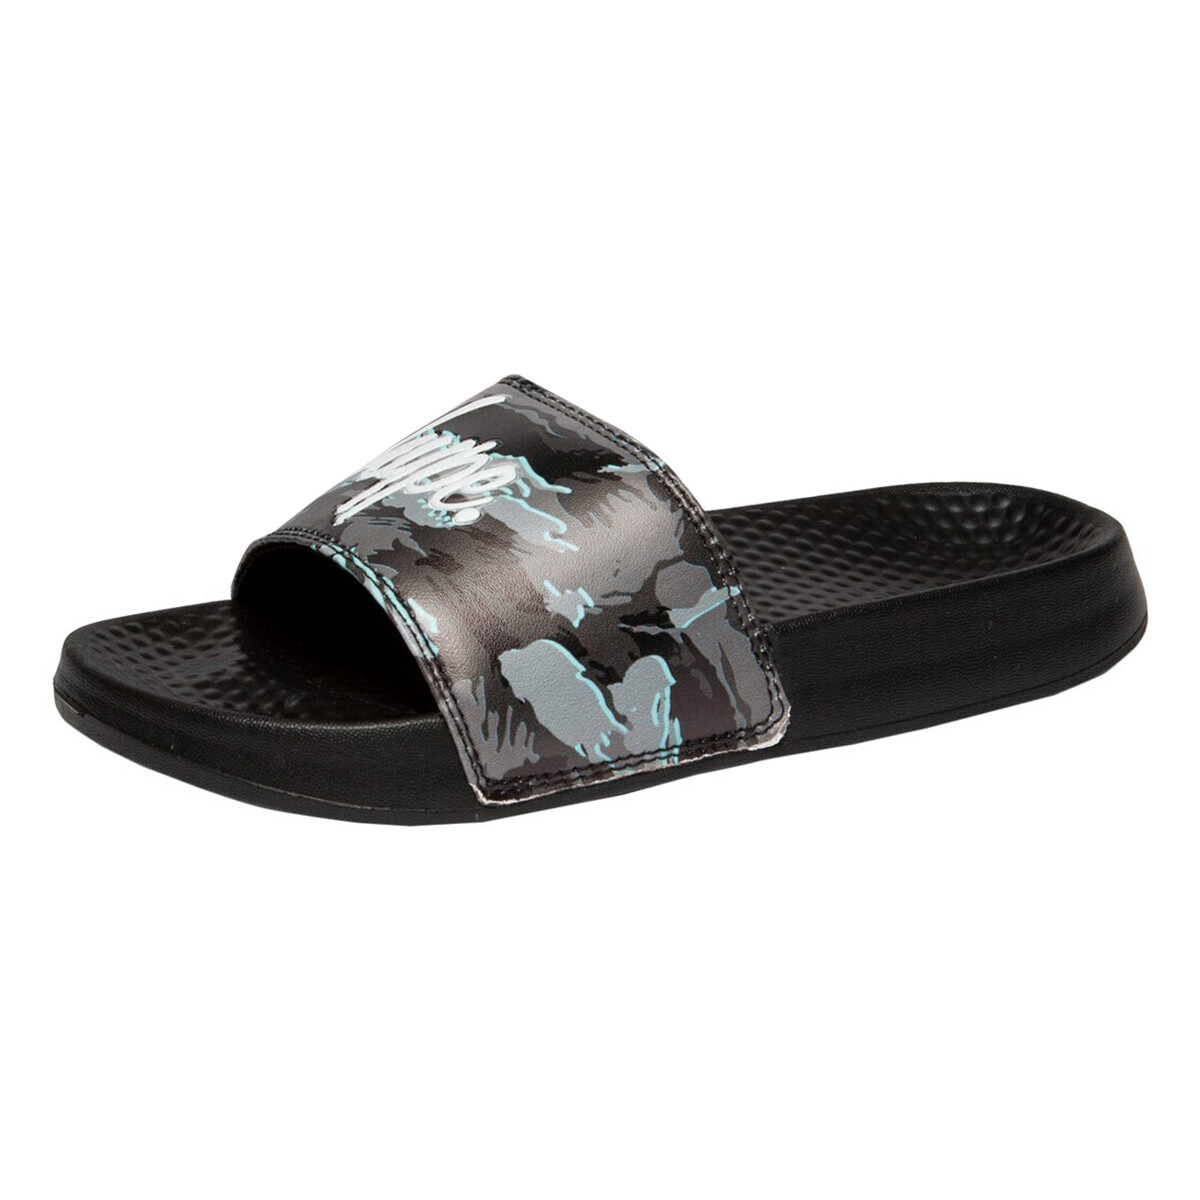 Zapatos Niños Sandalias Hype HY7571 Negro